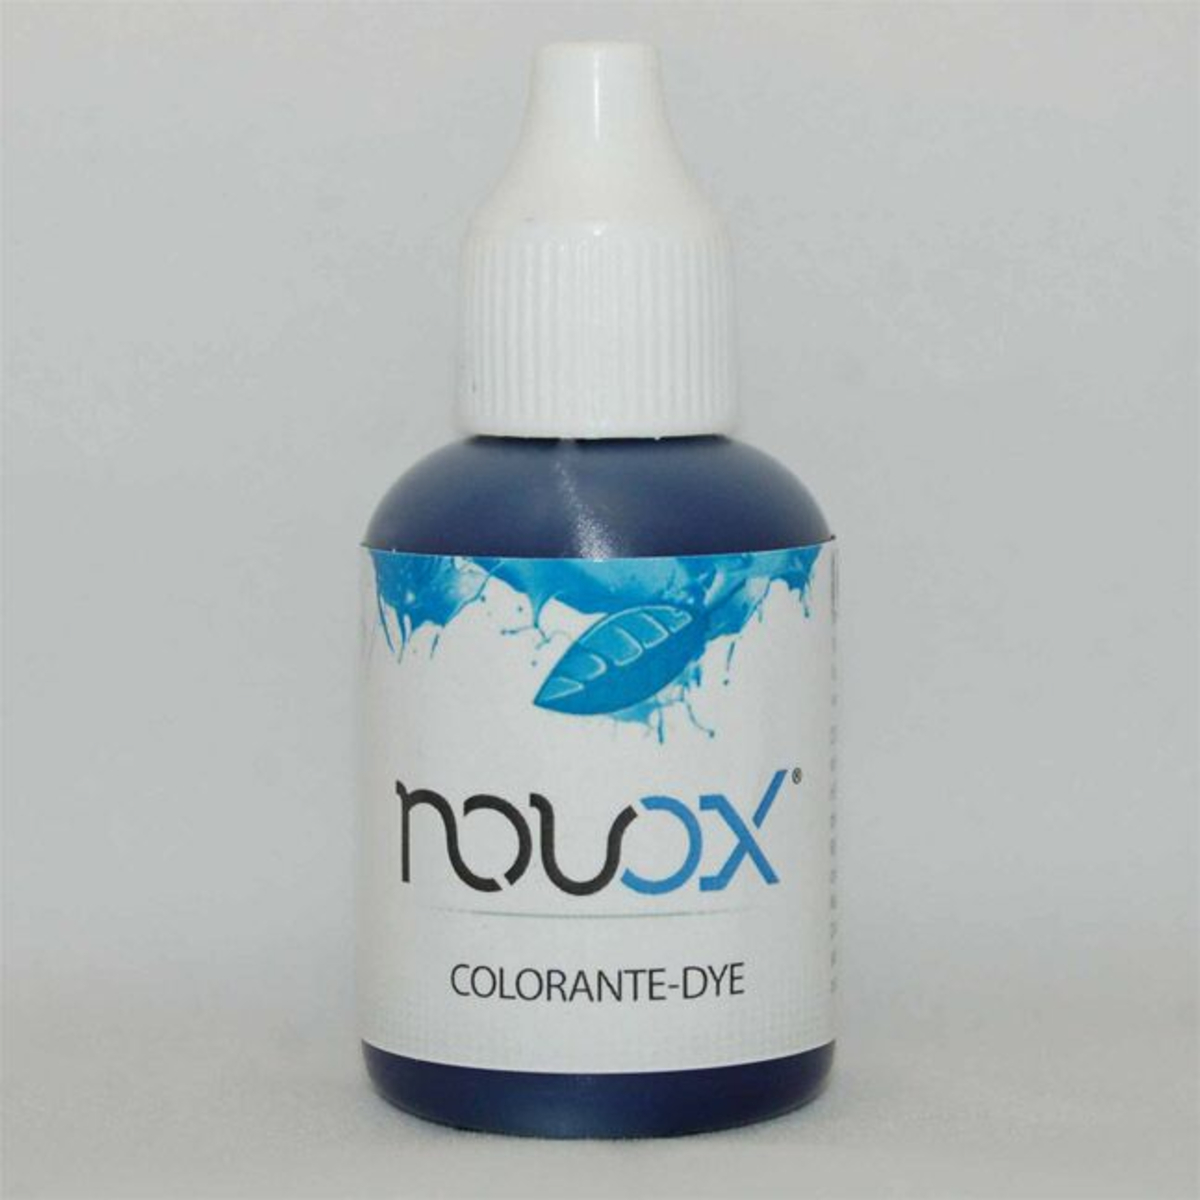 Blue Dye for Novox